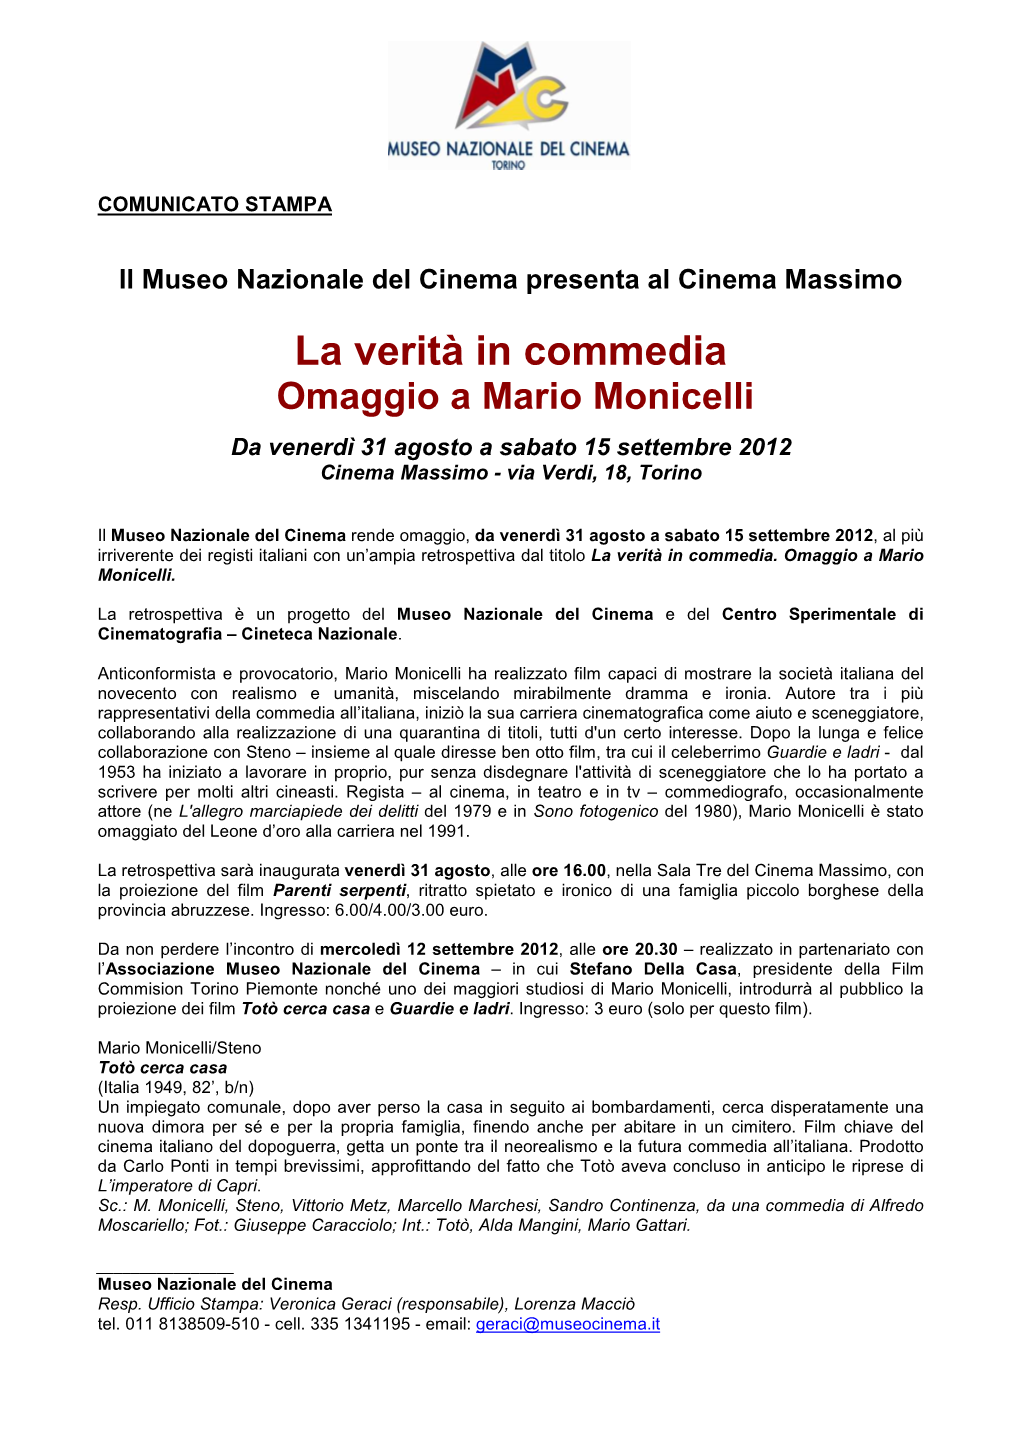 La Verità in Commedia Omaggio a Mario Monicelli